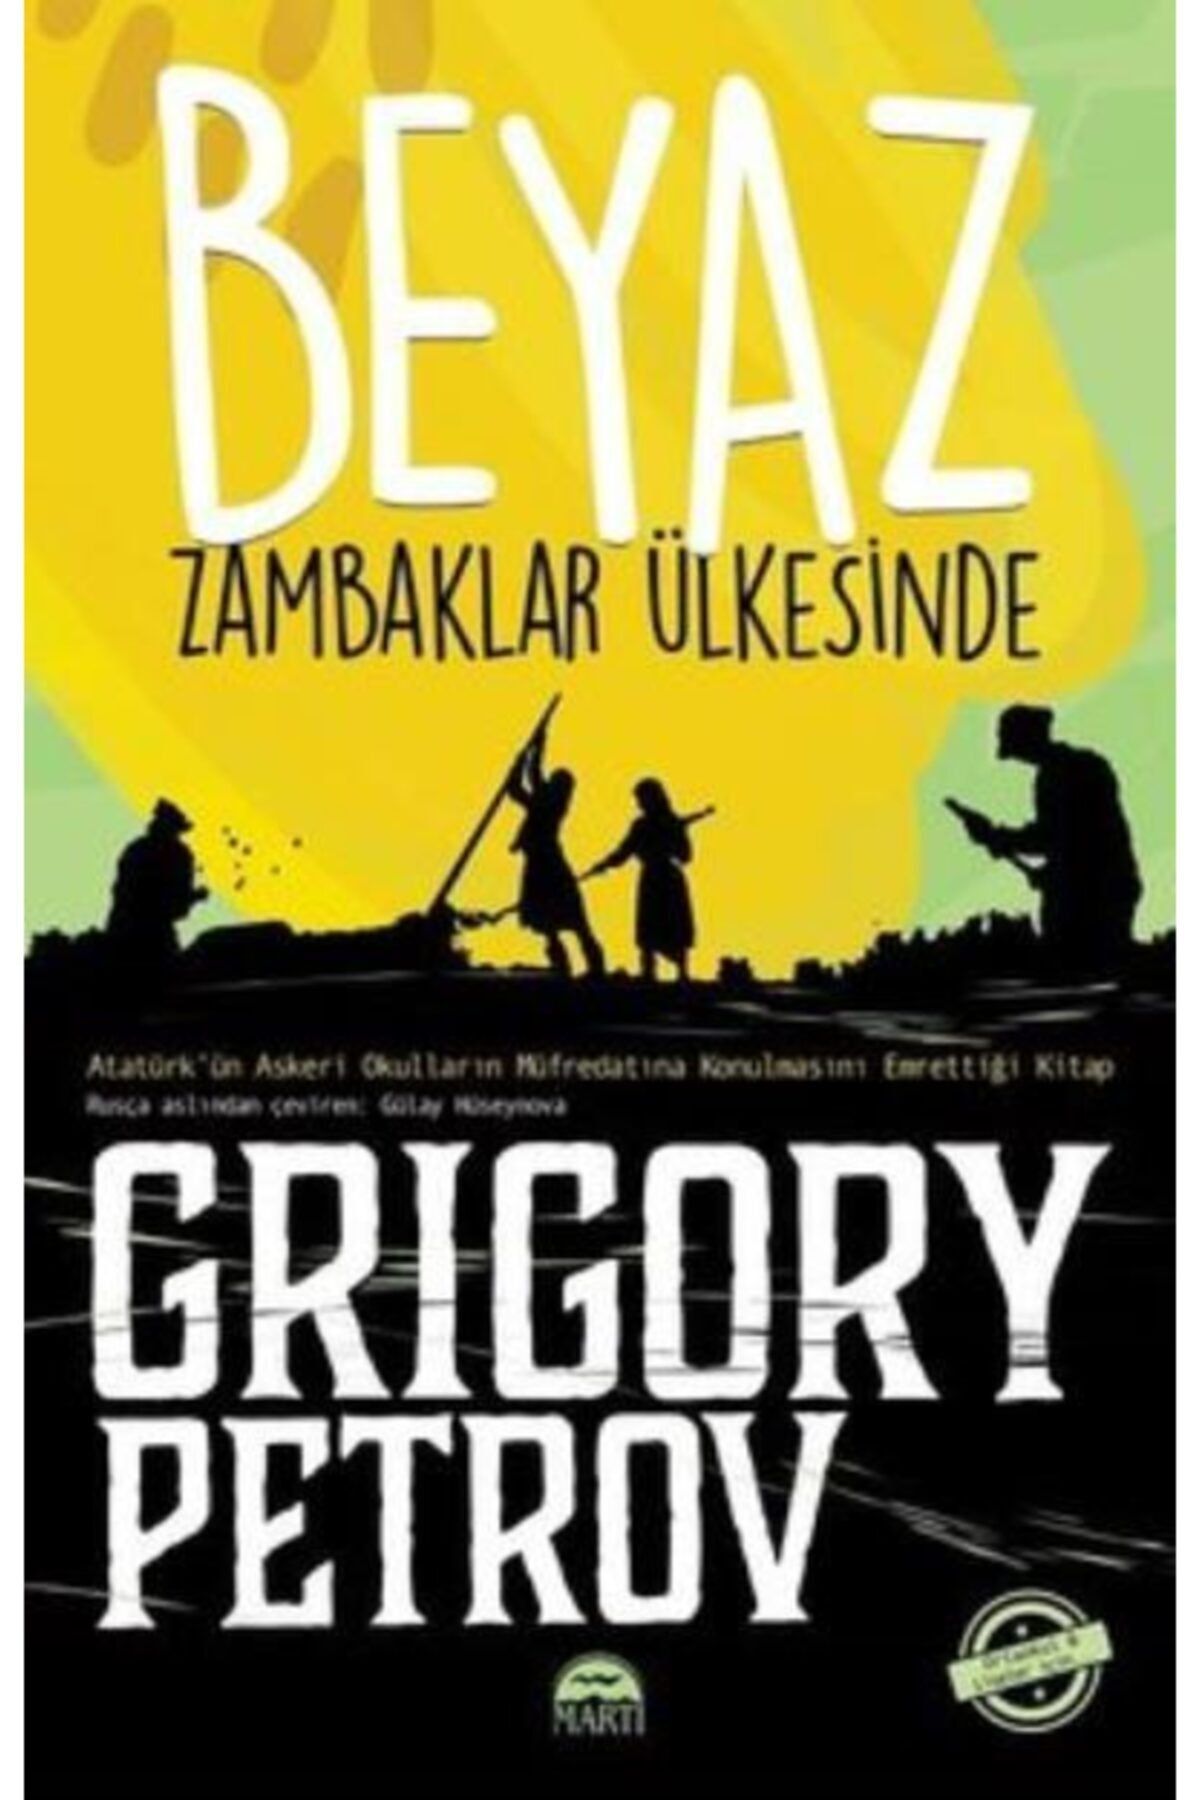 Martı Yayınları Beyaz Zambaklar Ülkesinde (GENÇLER İÇİN) - Grigory Petrov